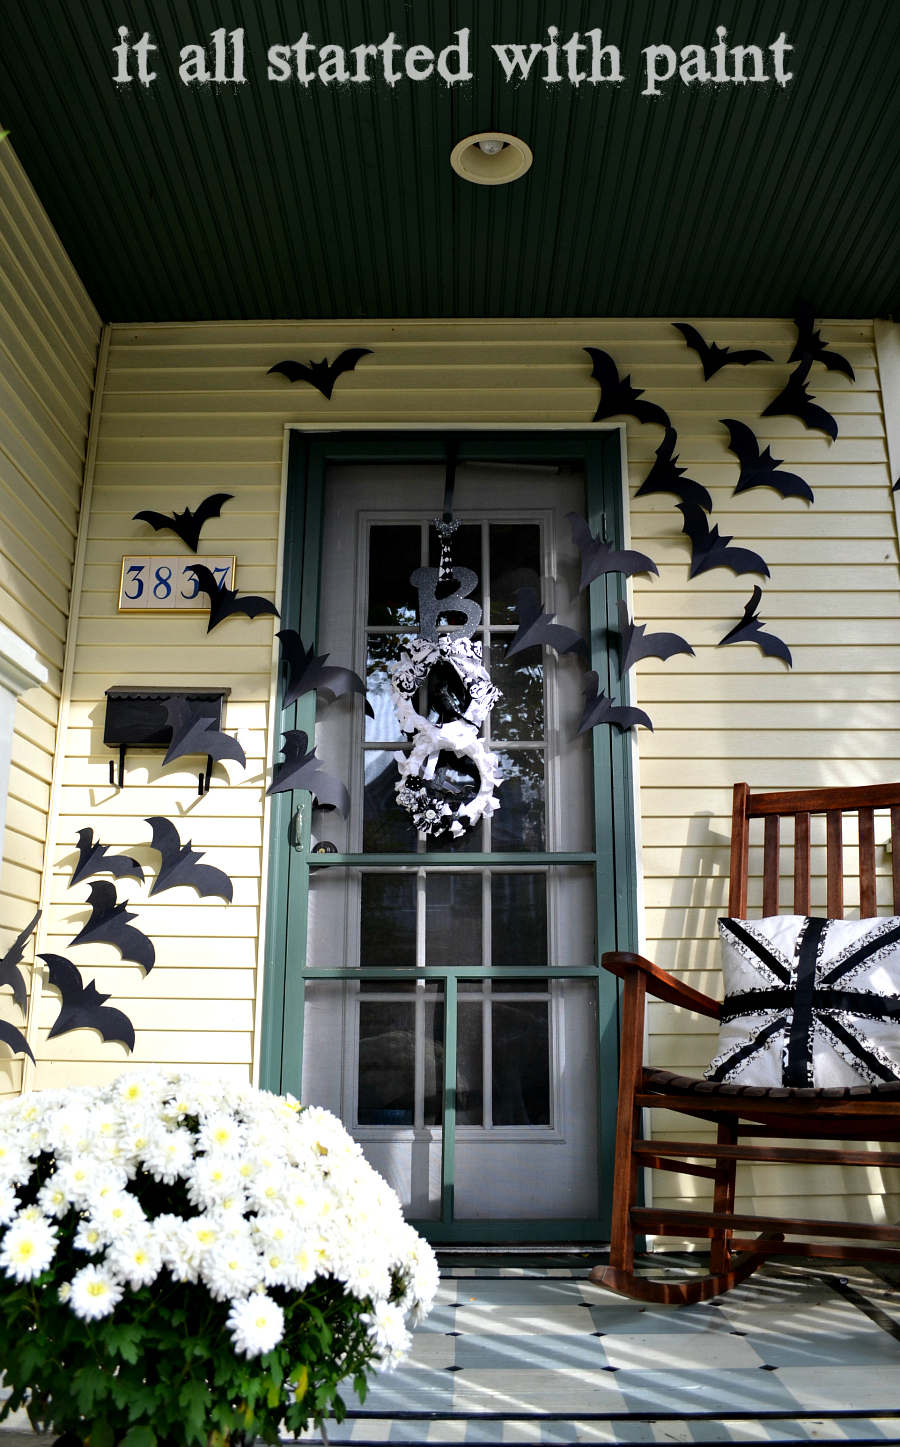 bats-flying-across-door-for-halloween